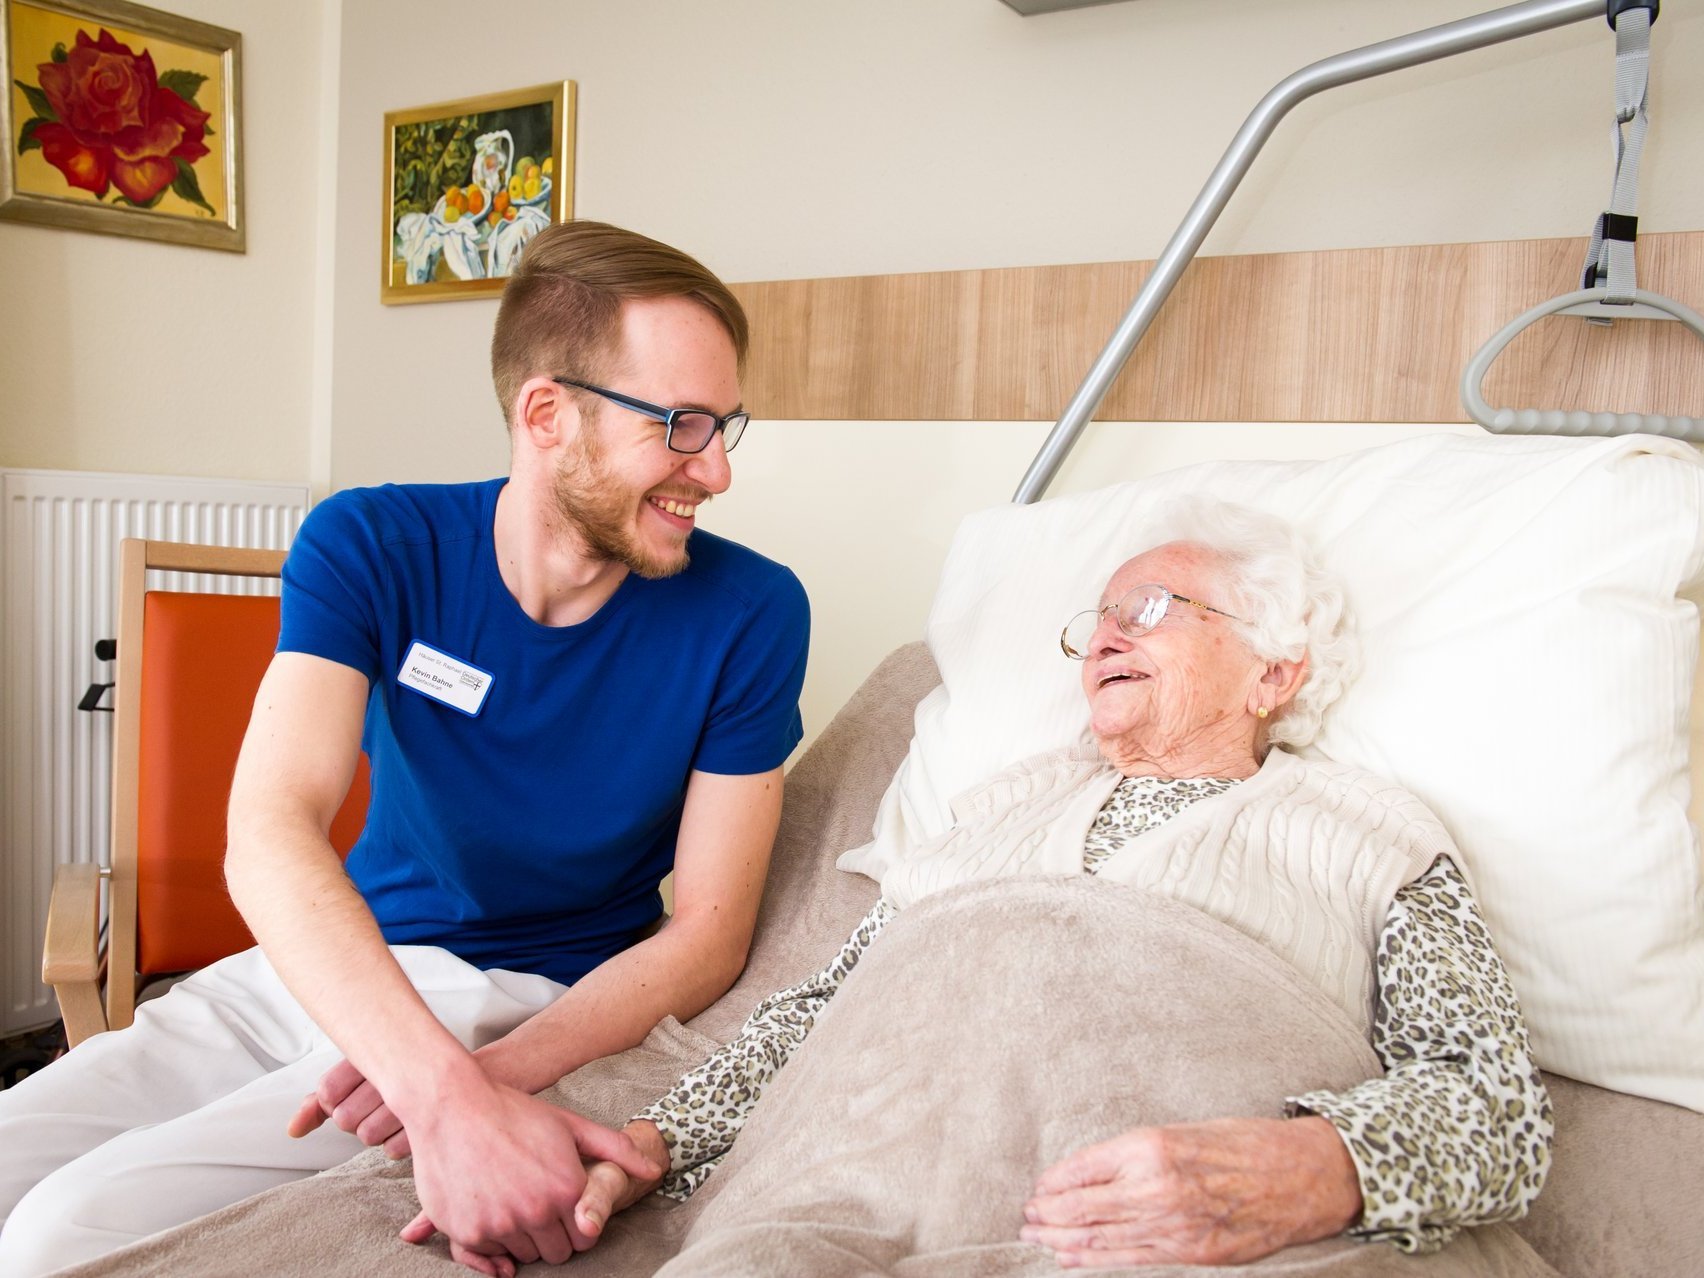 Ein junger Pfleger hält die Hand einer alten Frau, die im Krankenbett liegt - beide lächeln